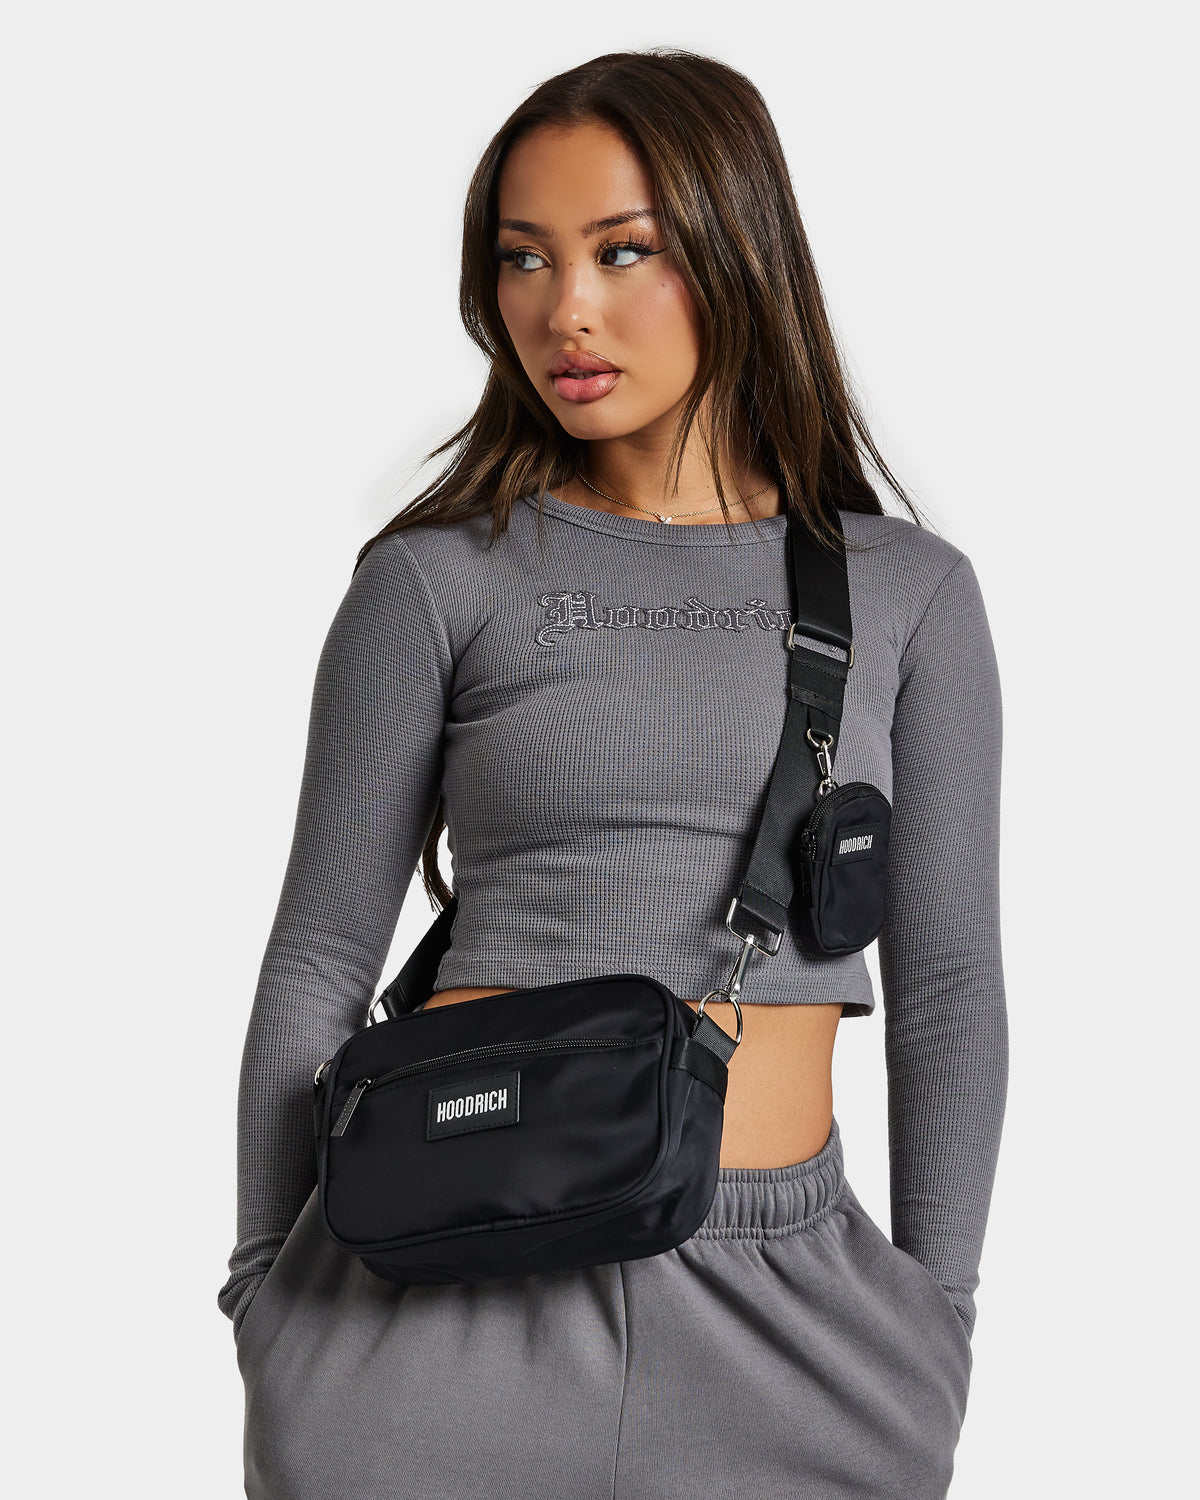 OG Core Women's Crossbody Bag - Black/Silver